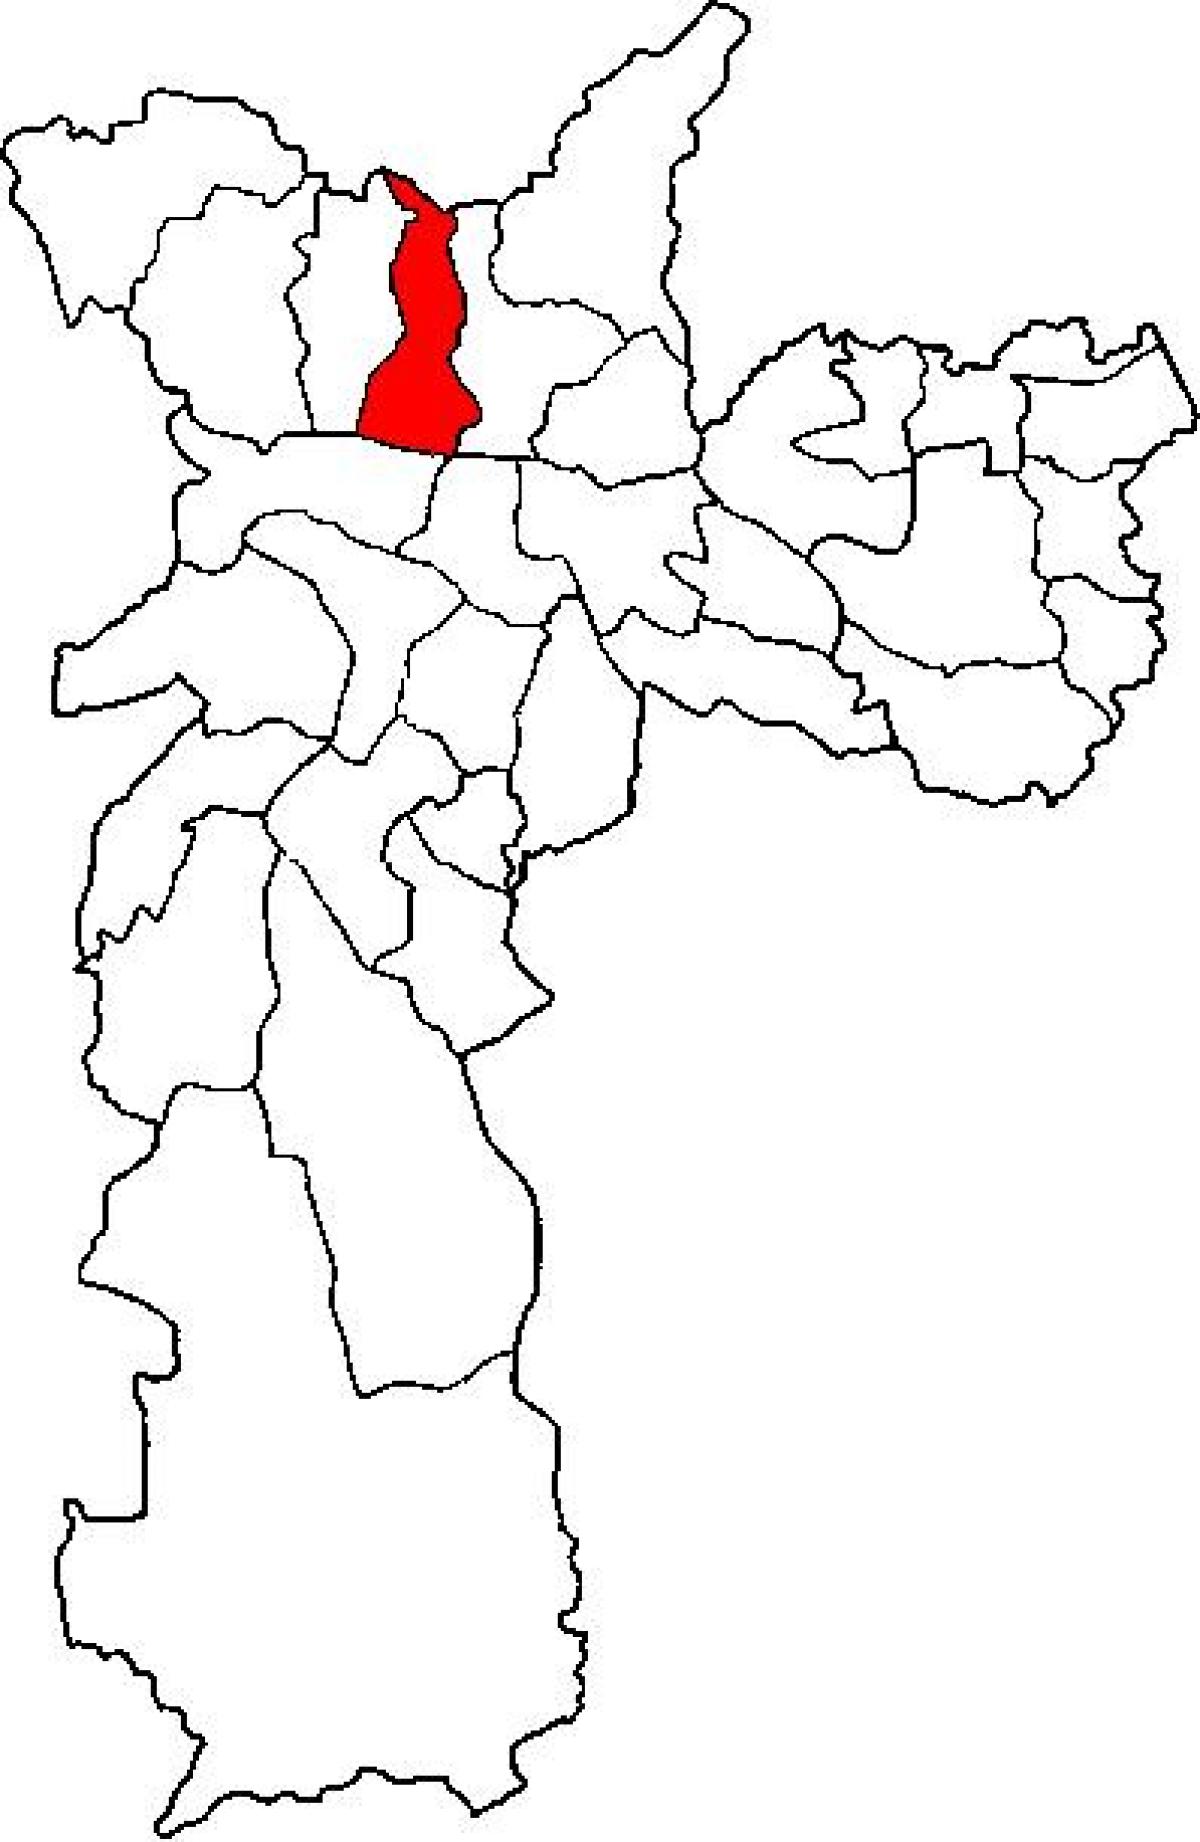 แผนที่ของคาซ่าต้าเวอร์รายการย่อยขอ prefecture São Paulo